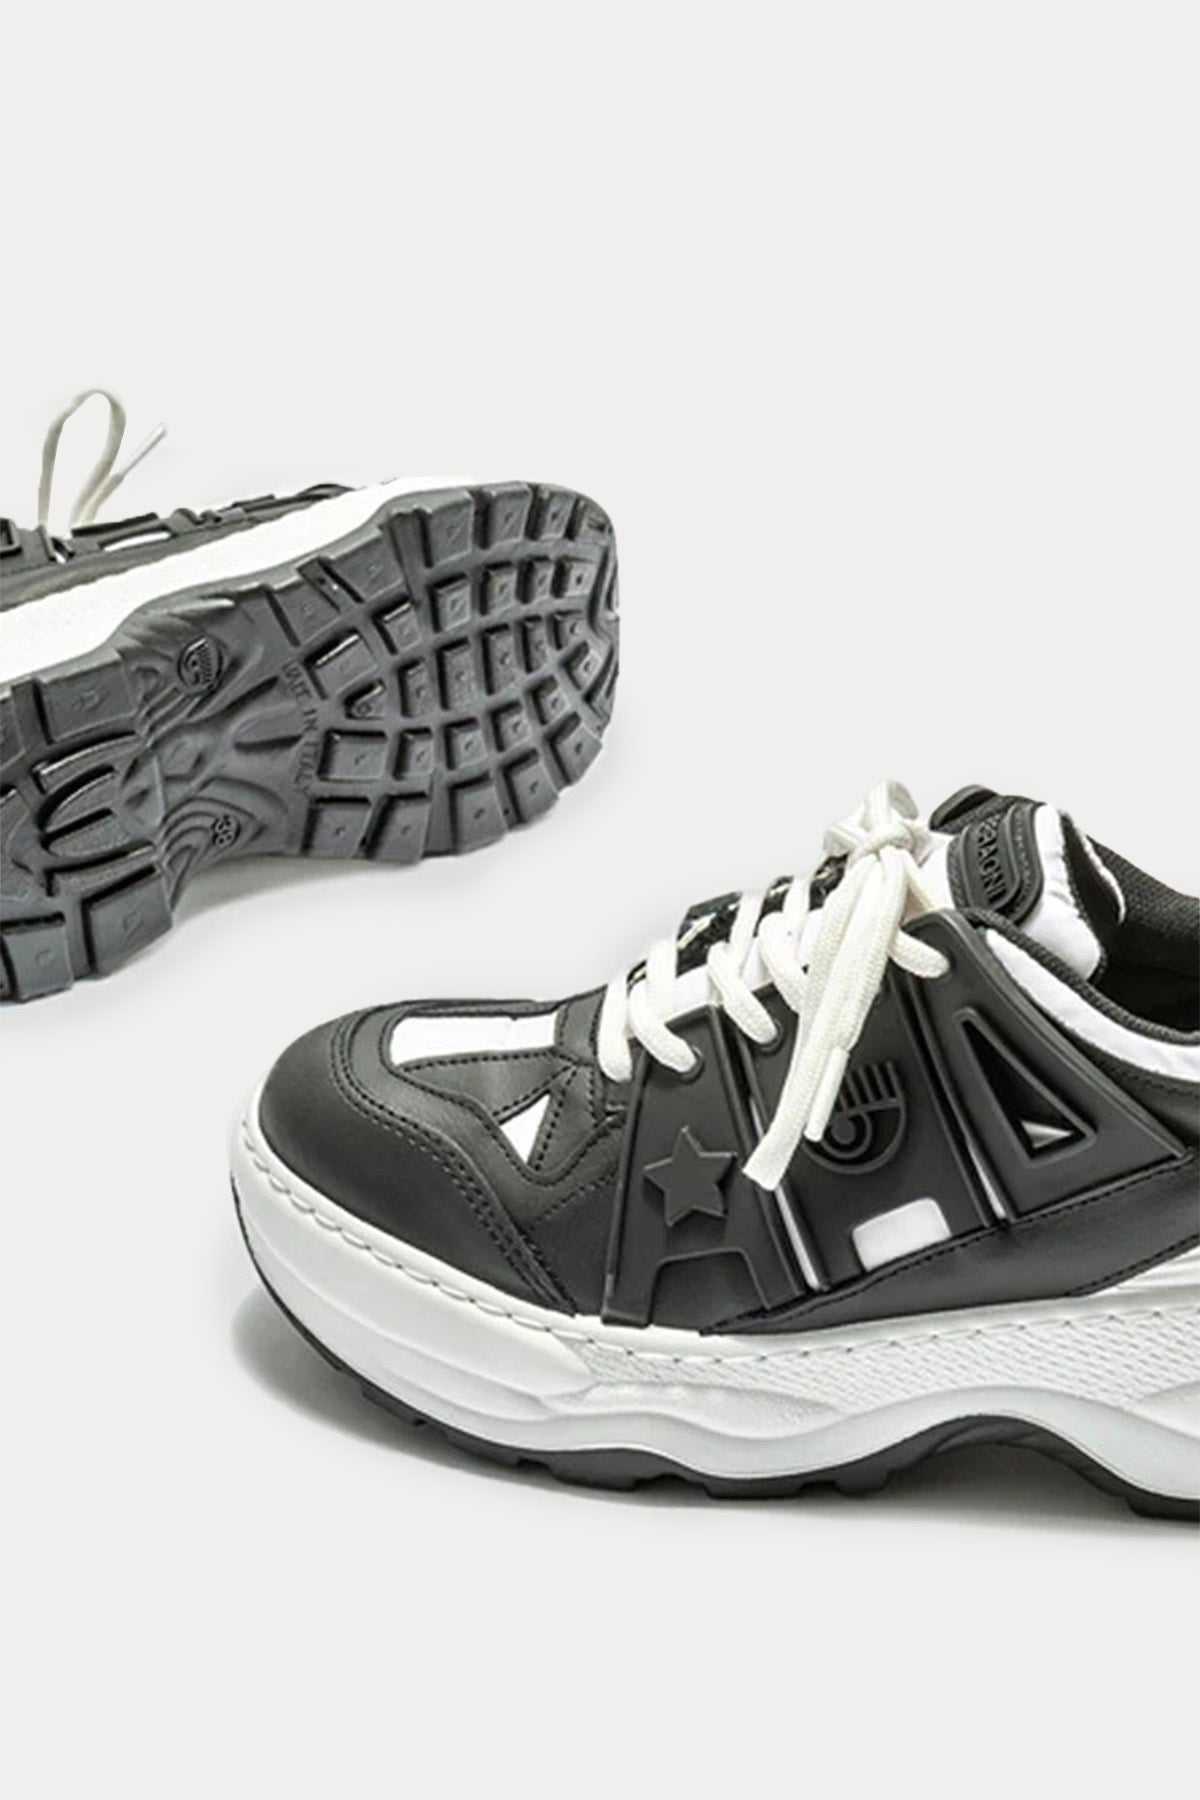 Chiara Ferragni Göz Logolu Deri Sneaker Ayakkabı